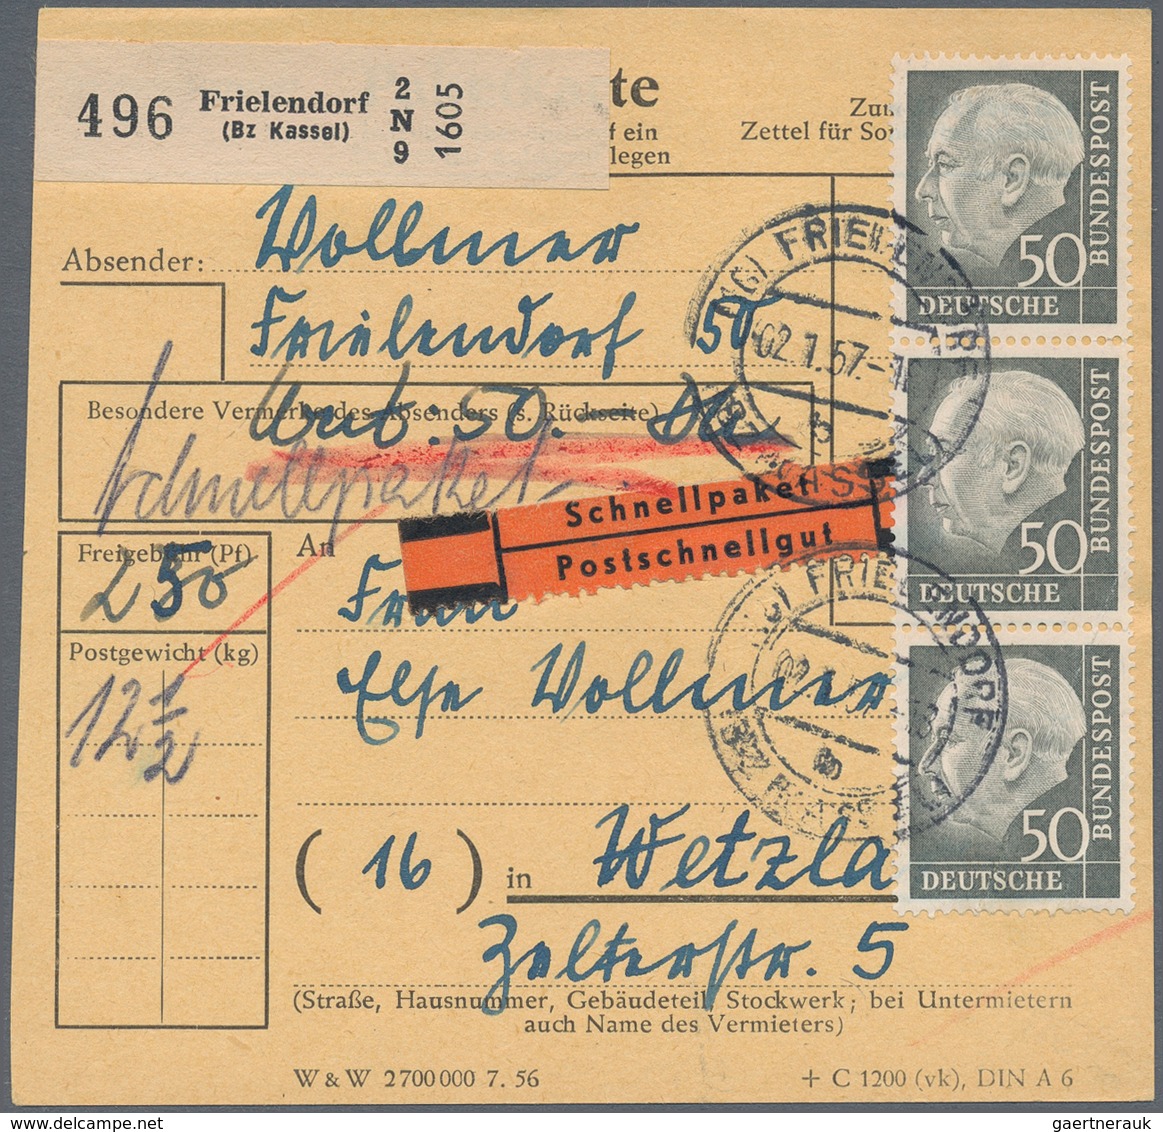 Bundesrepublik Deutschland: 1949/2000 (ca.), vielseitige Partie von ca. 300 Briefen/Karten/Ganzsache